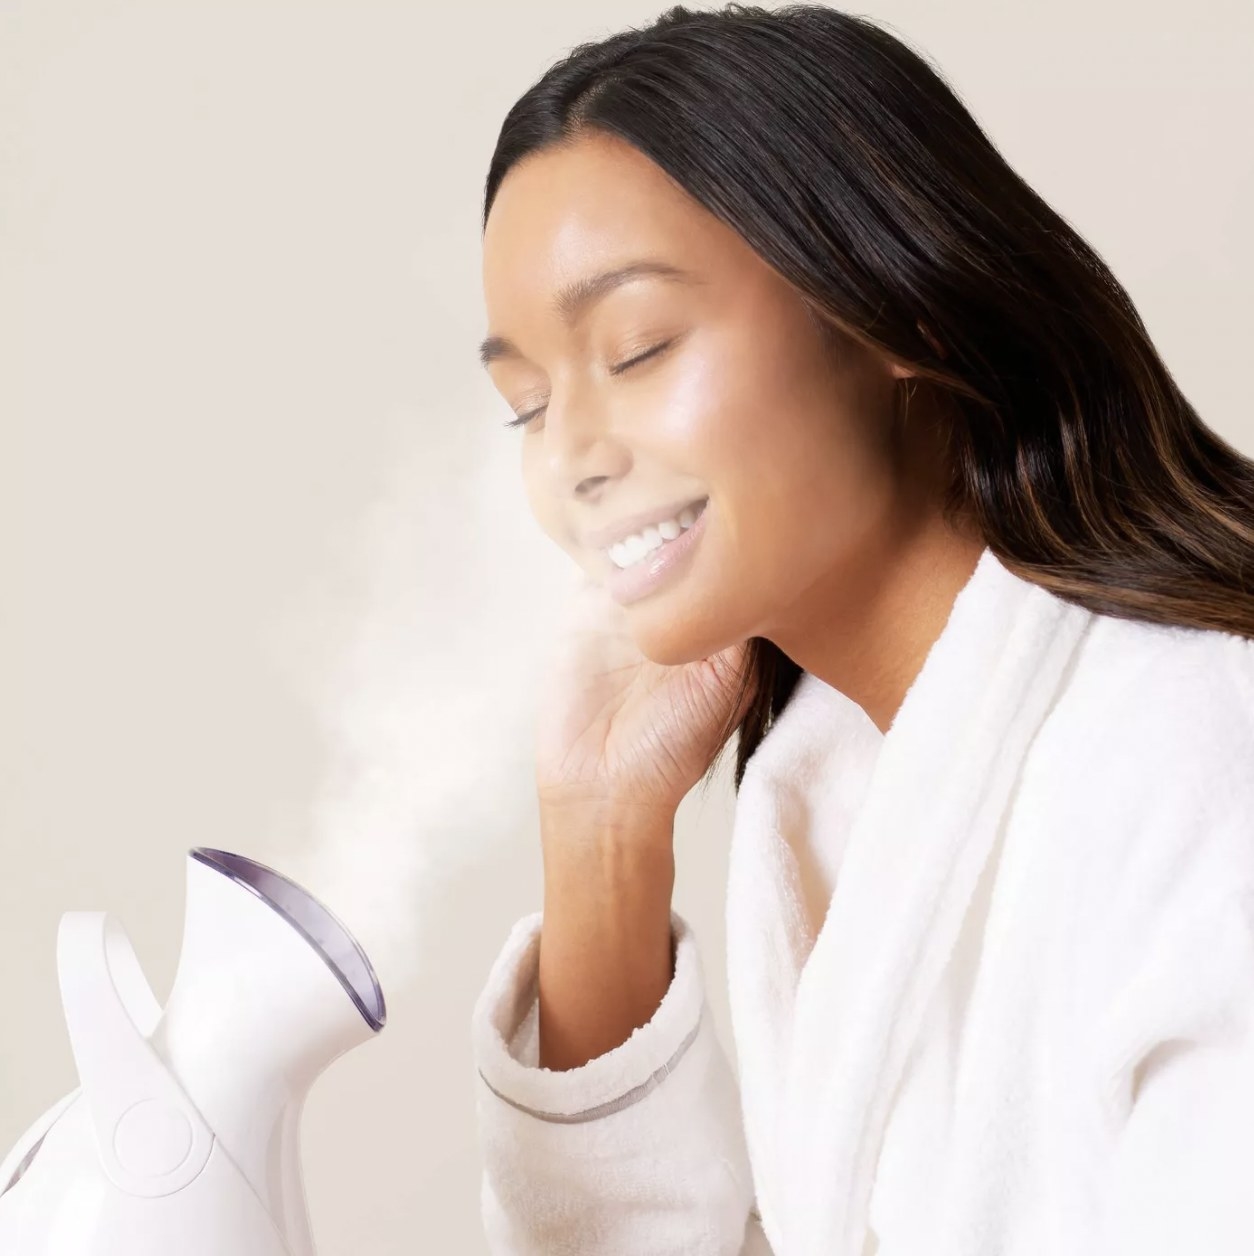 Women using facial steamer in white robe